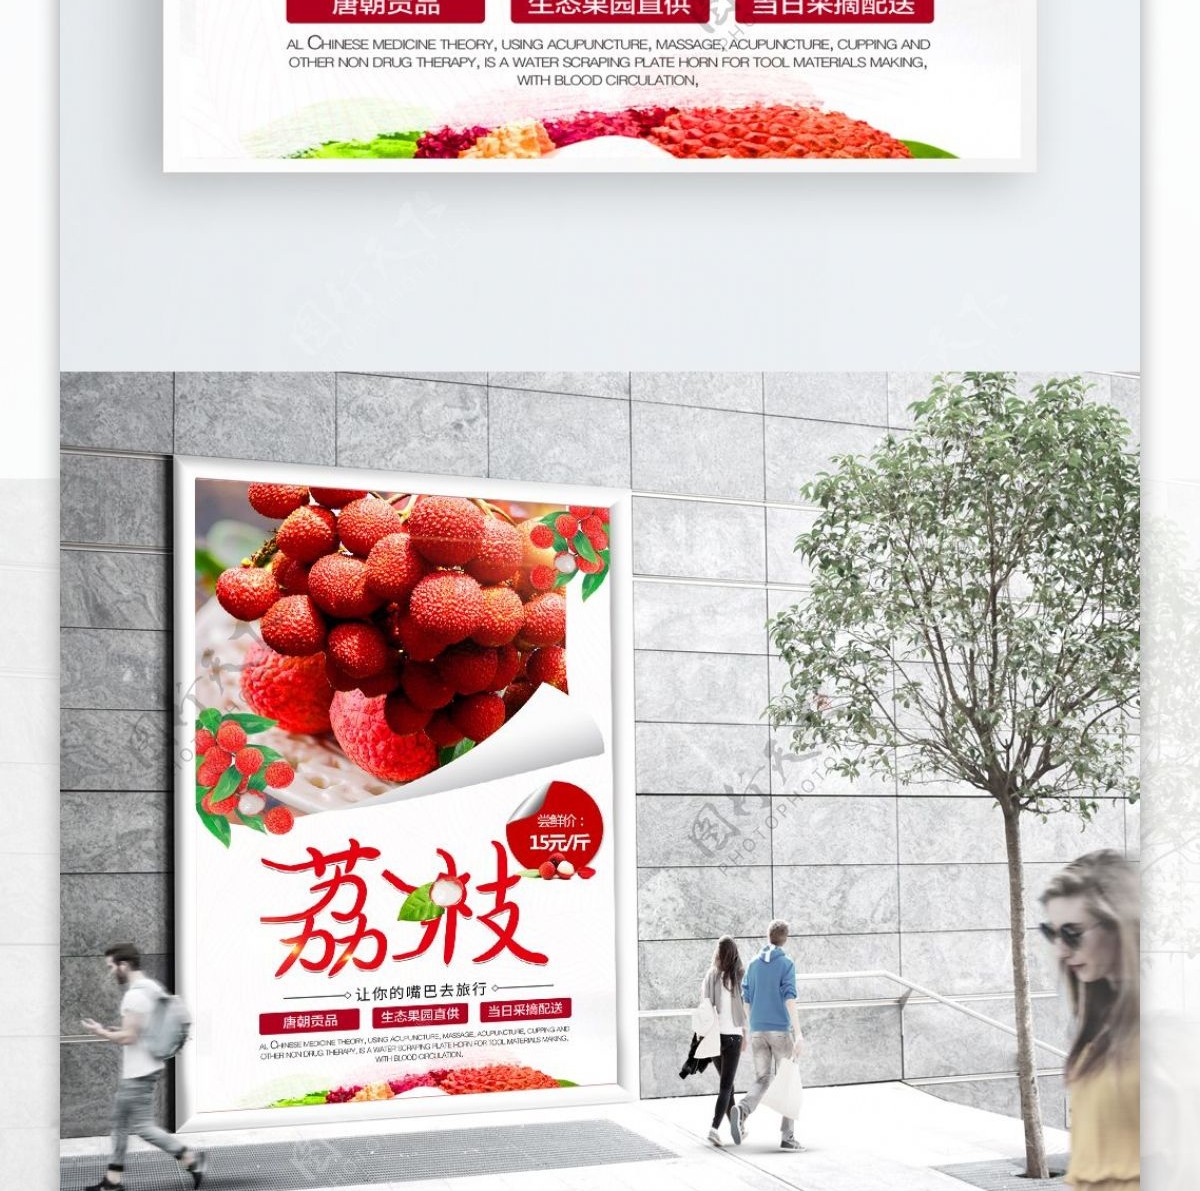 荔枝水果海报设计